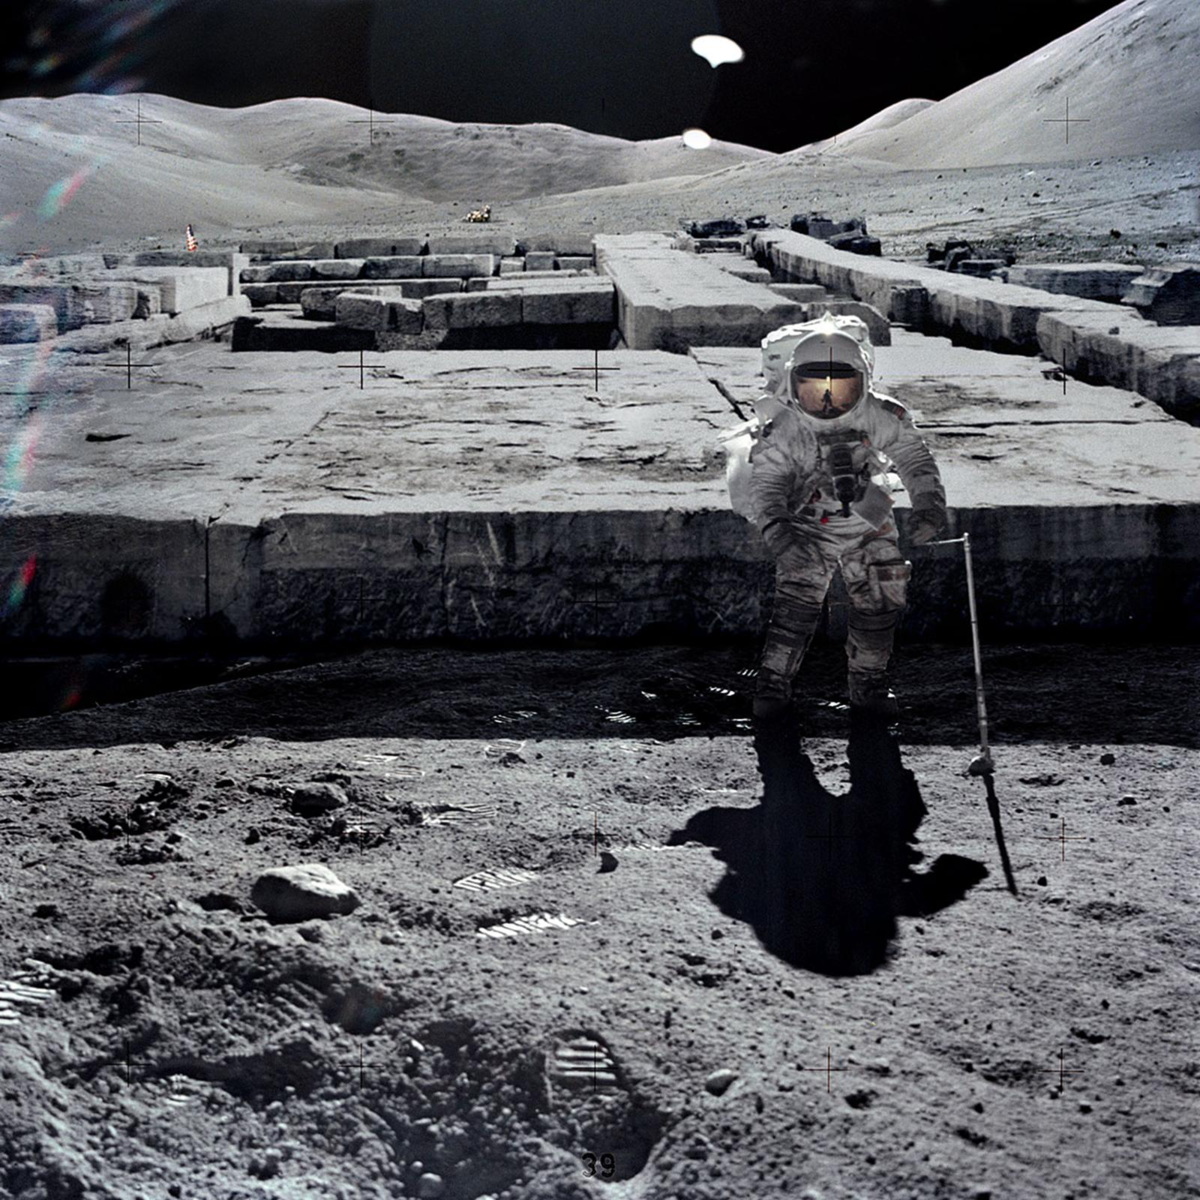 El Otro Lado De La Luna: ¿Bases Alienígenas O El Cementerio De Un Antiguo Astronauta?